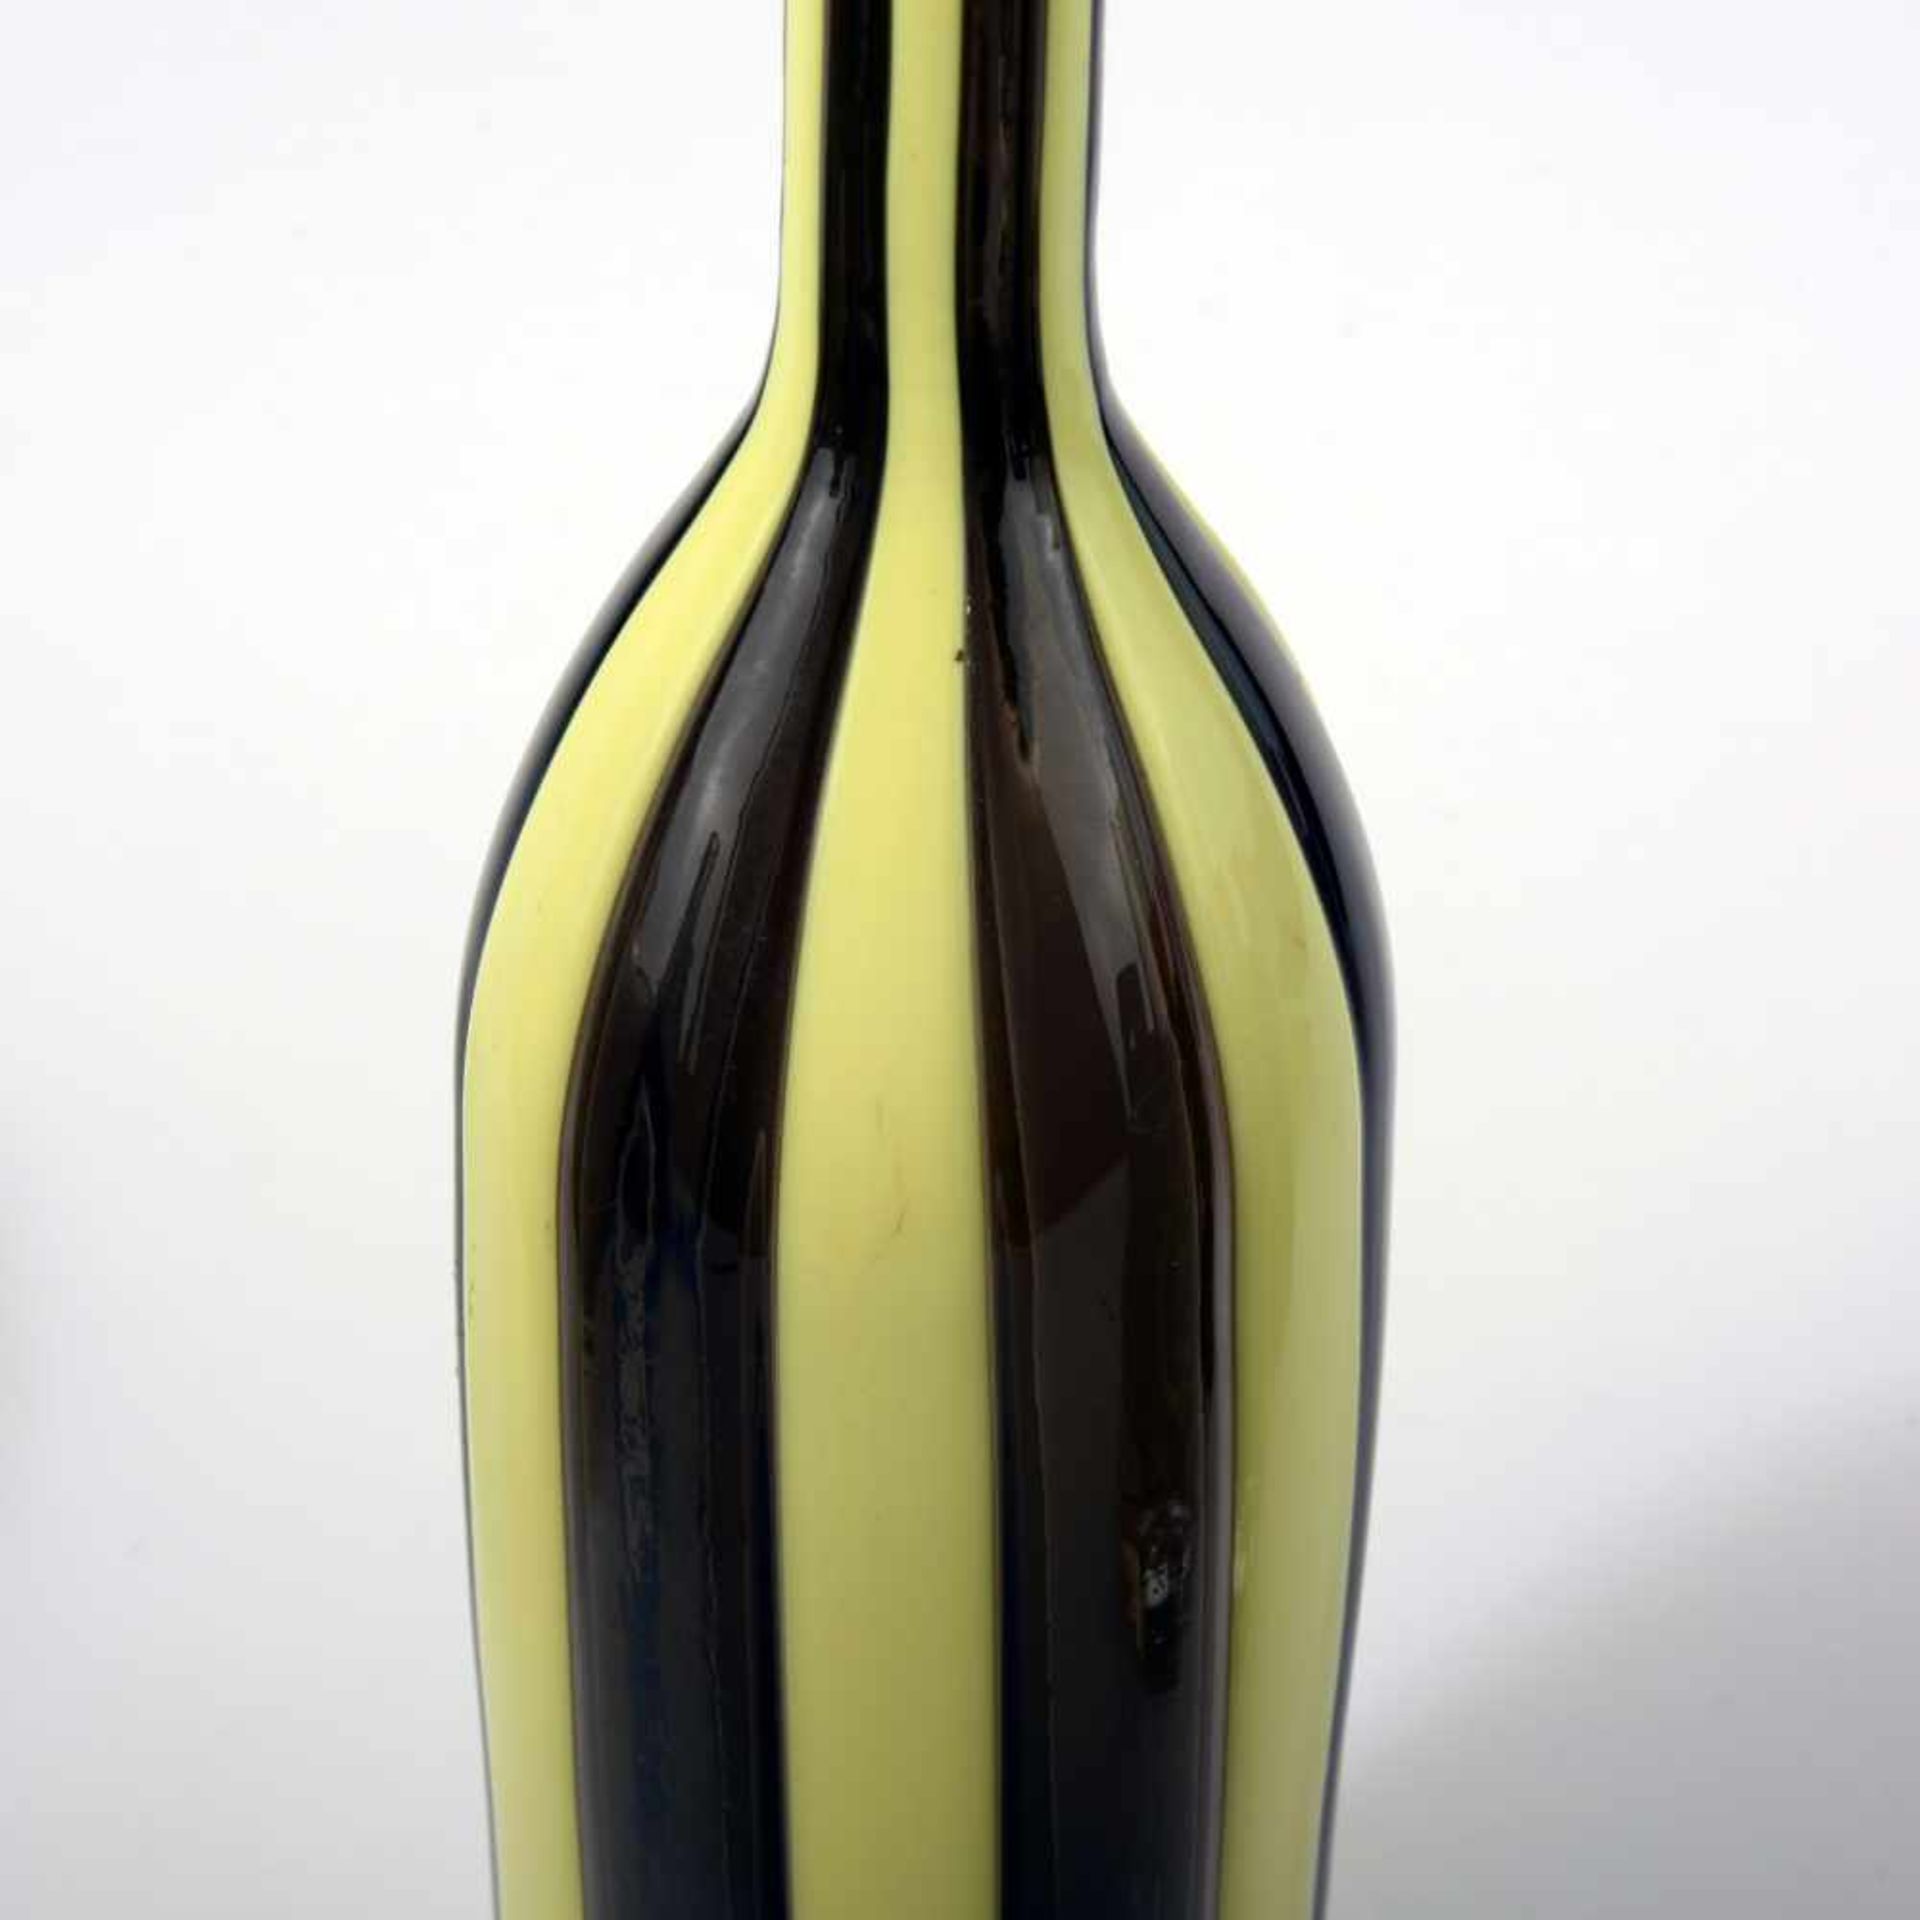 Flasche mit Stopfen 'A canne', 1956 Paolo Venini Zylindrisch. H. 46 cm. Ausführung Venini & C. - Bild 3 aus 3